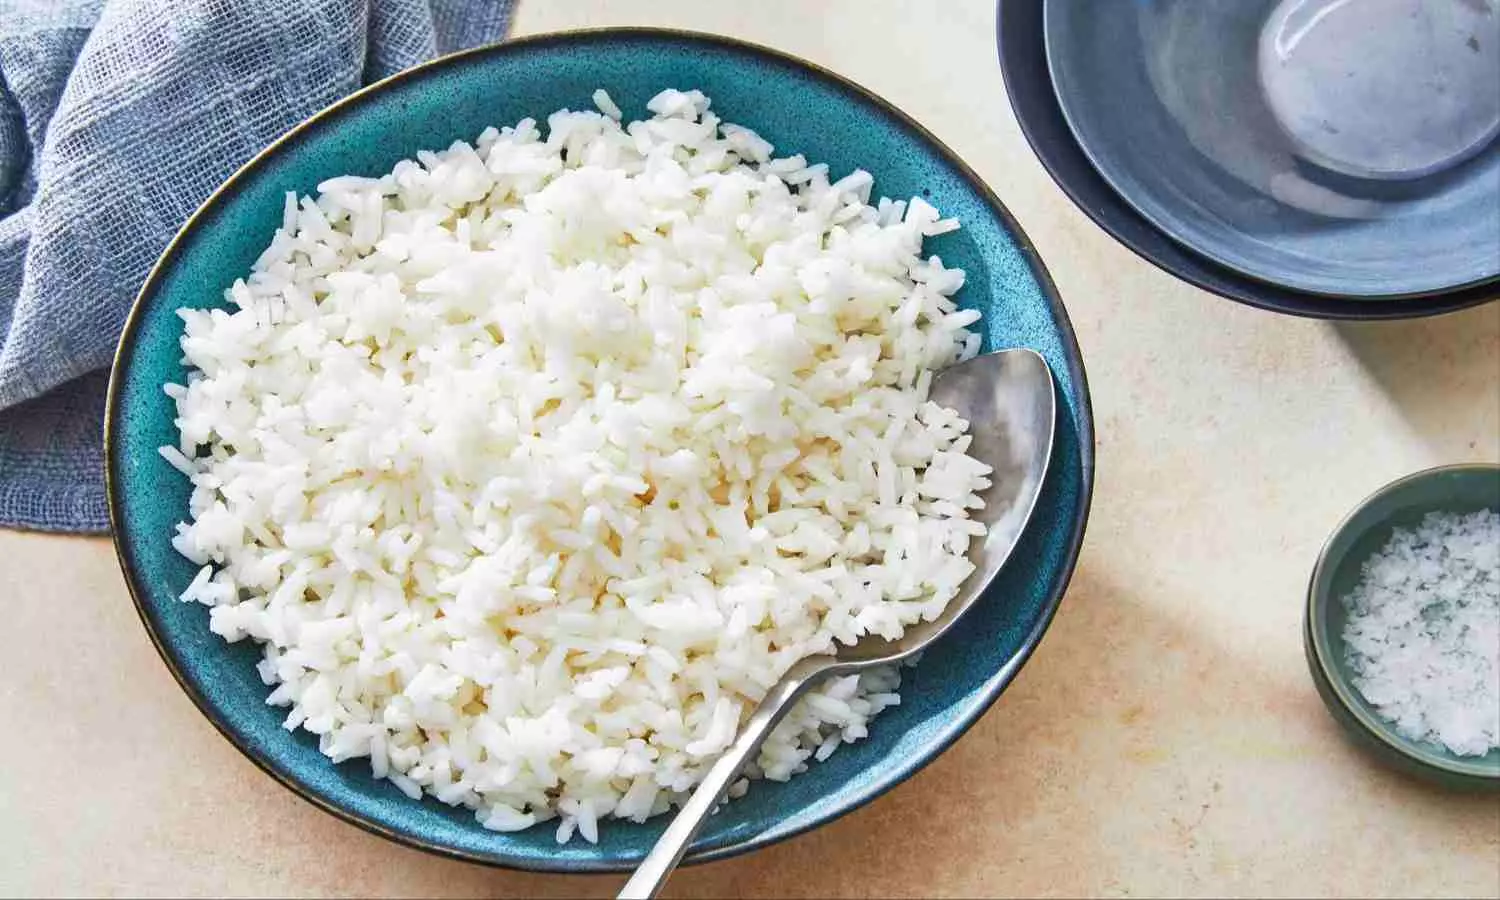 White Rice Benefits: इन बीमारियों में चावल खाना है बेहद फायदेमंद, जानें इसके लाभ